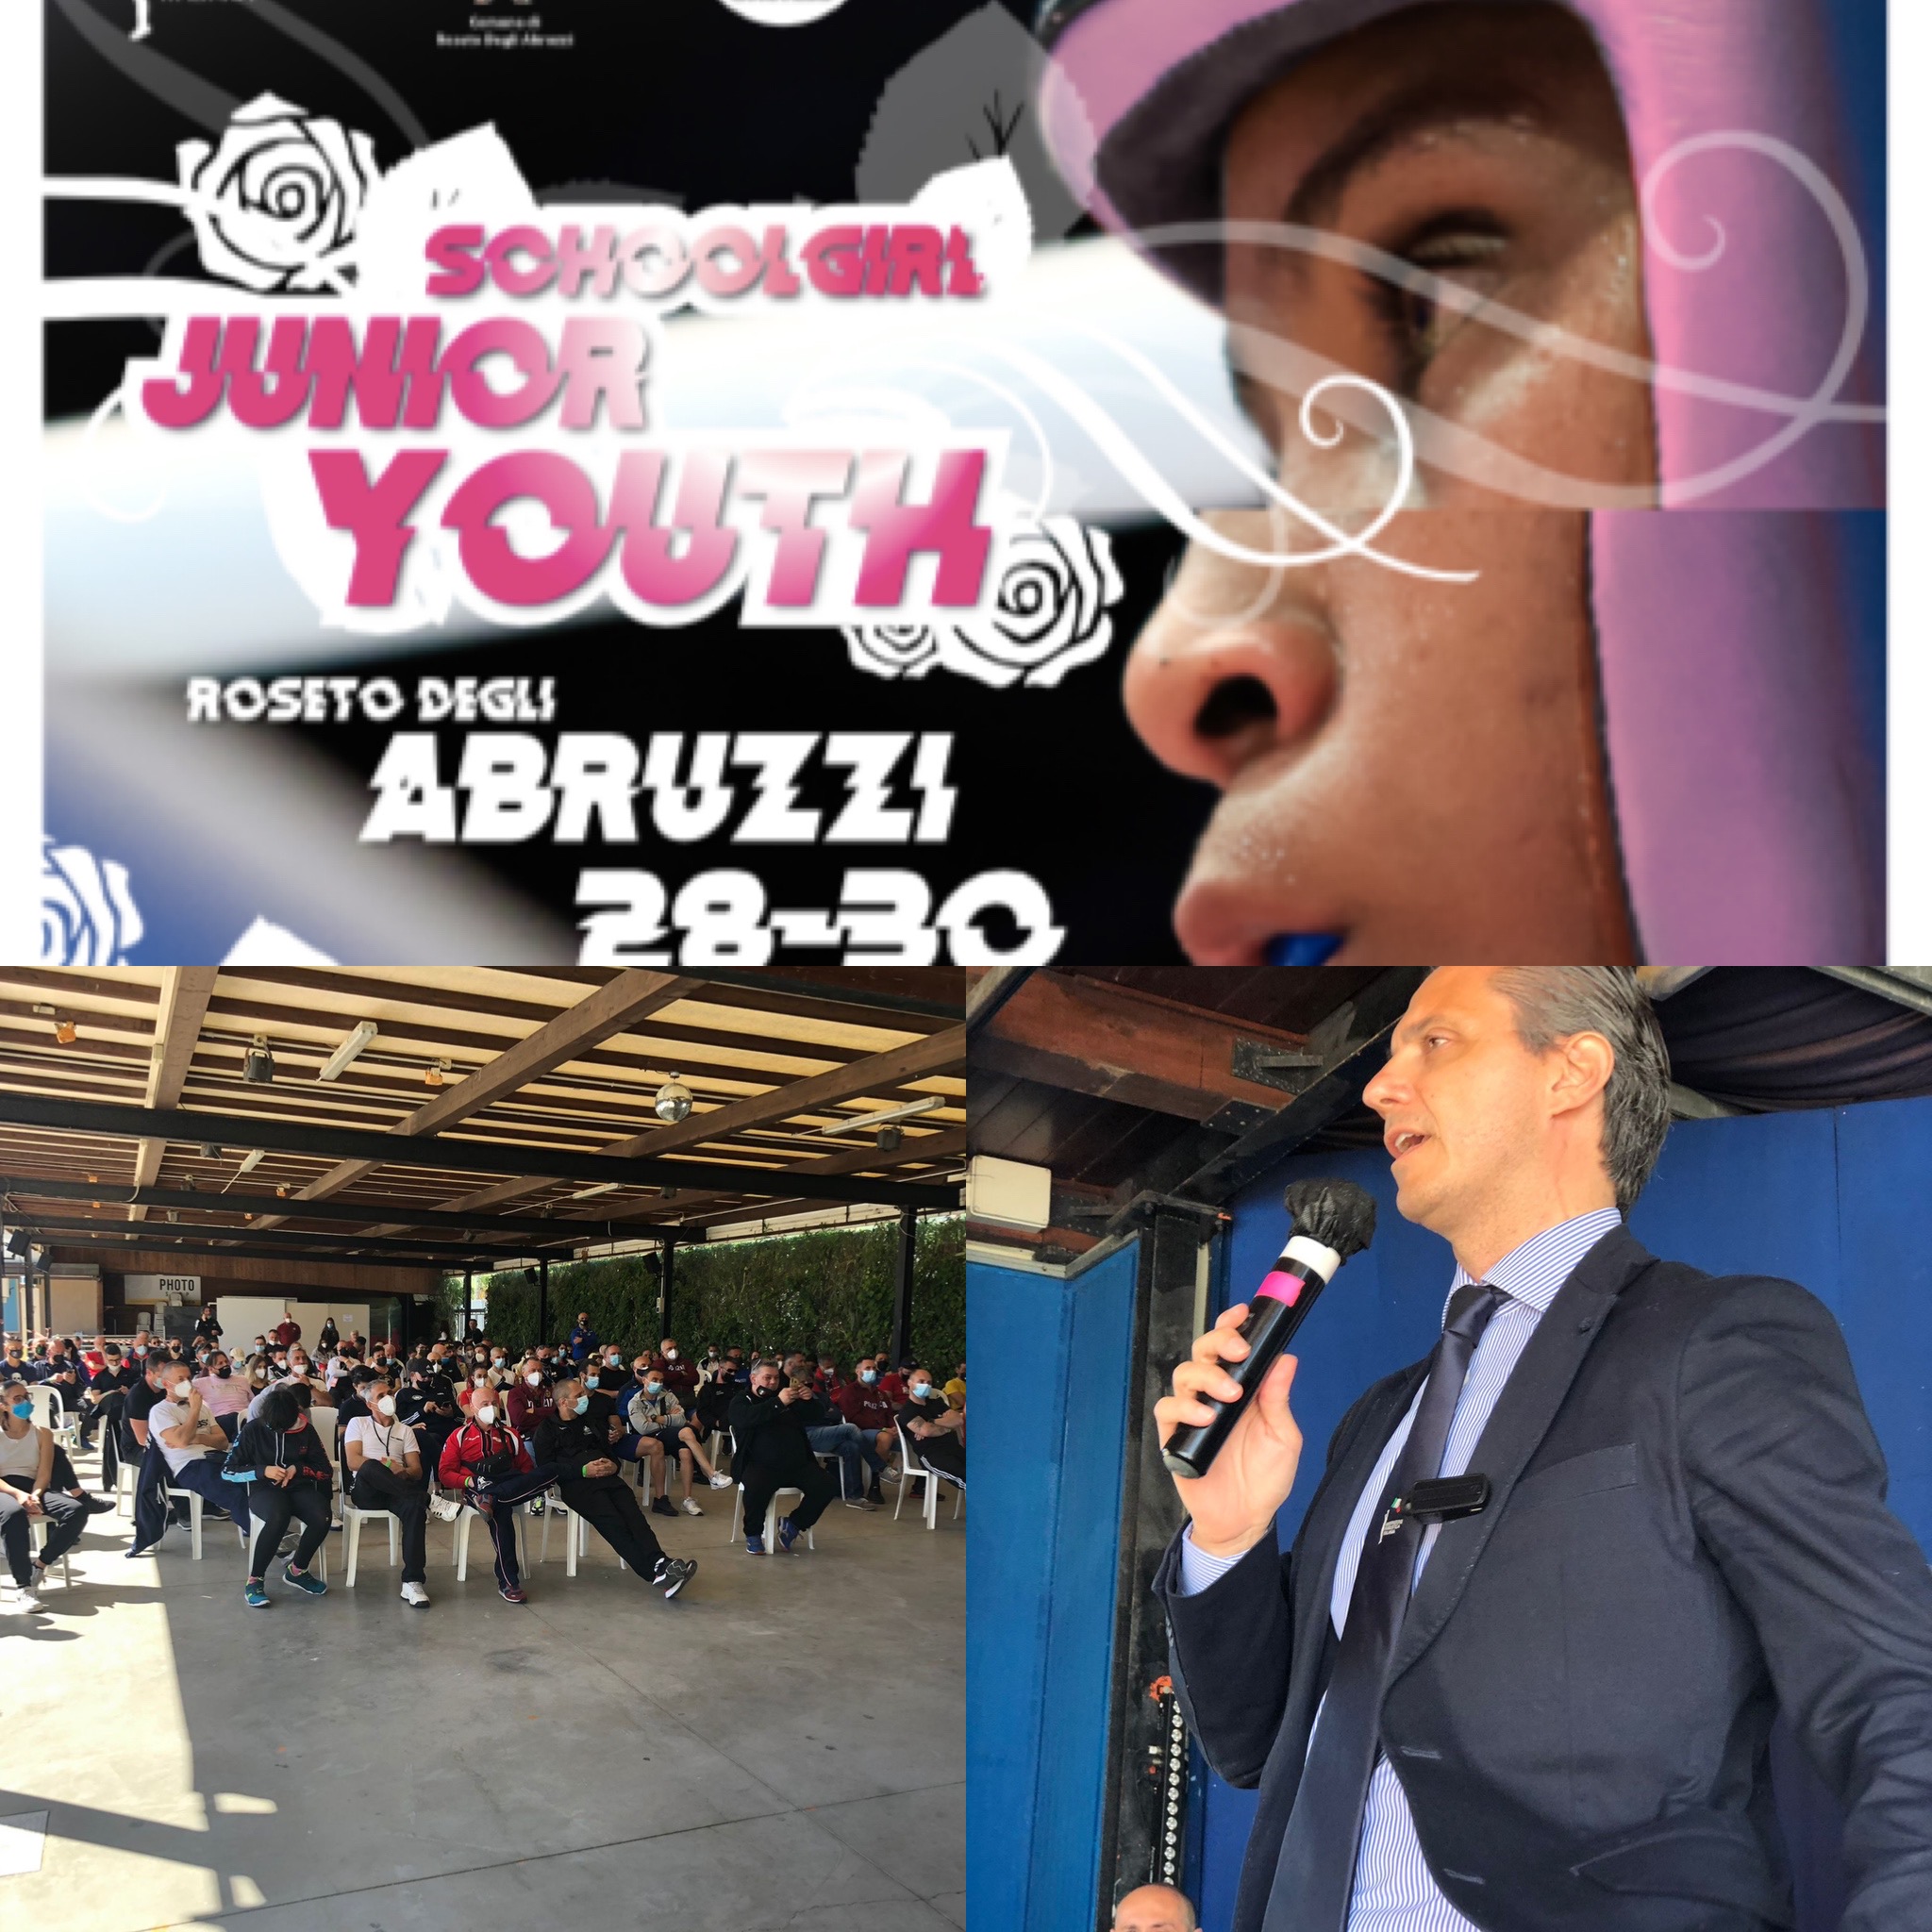 Campionati Italiani Femminili Schoolgirl-Junior-Youth Roseto degli Abruzzi 2021:  PROGRAMMA QUARTI (H 15) + INFO LIVESTREAMING